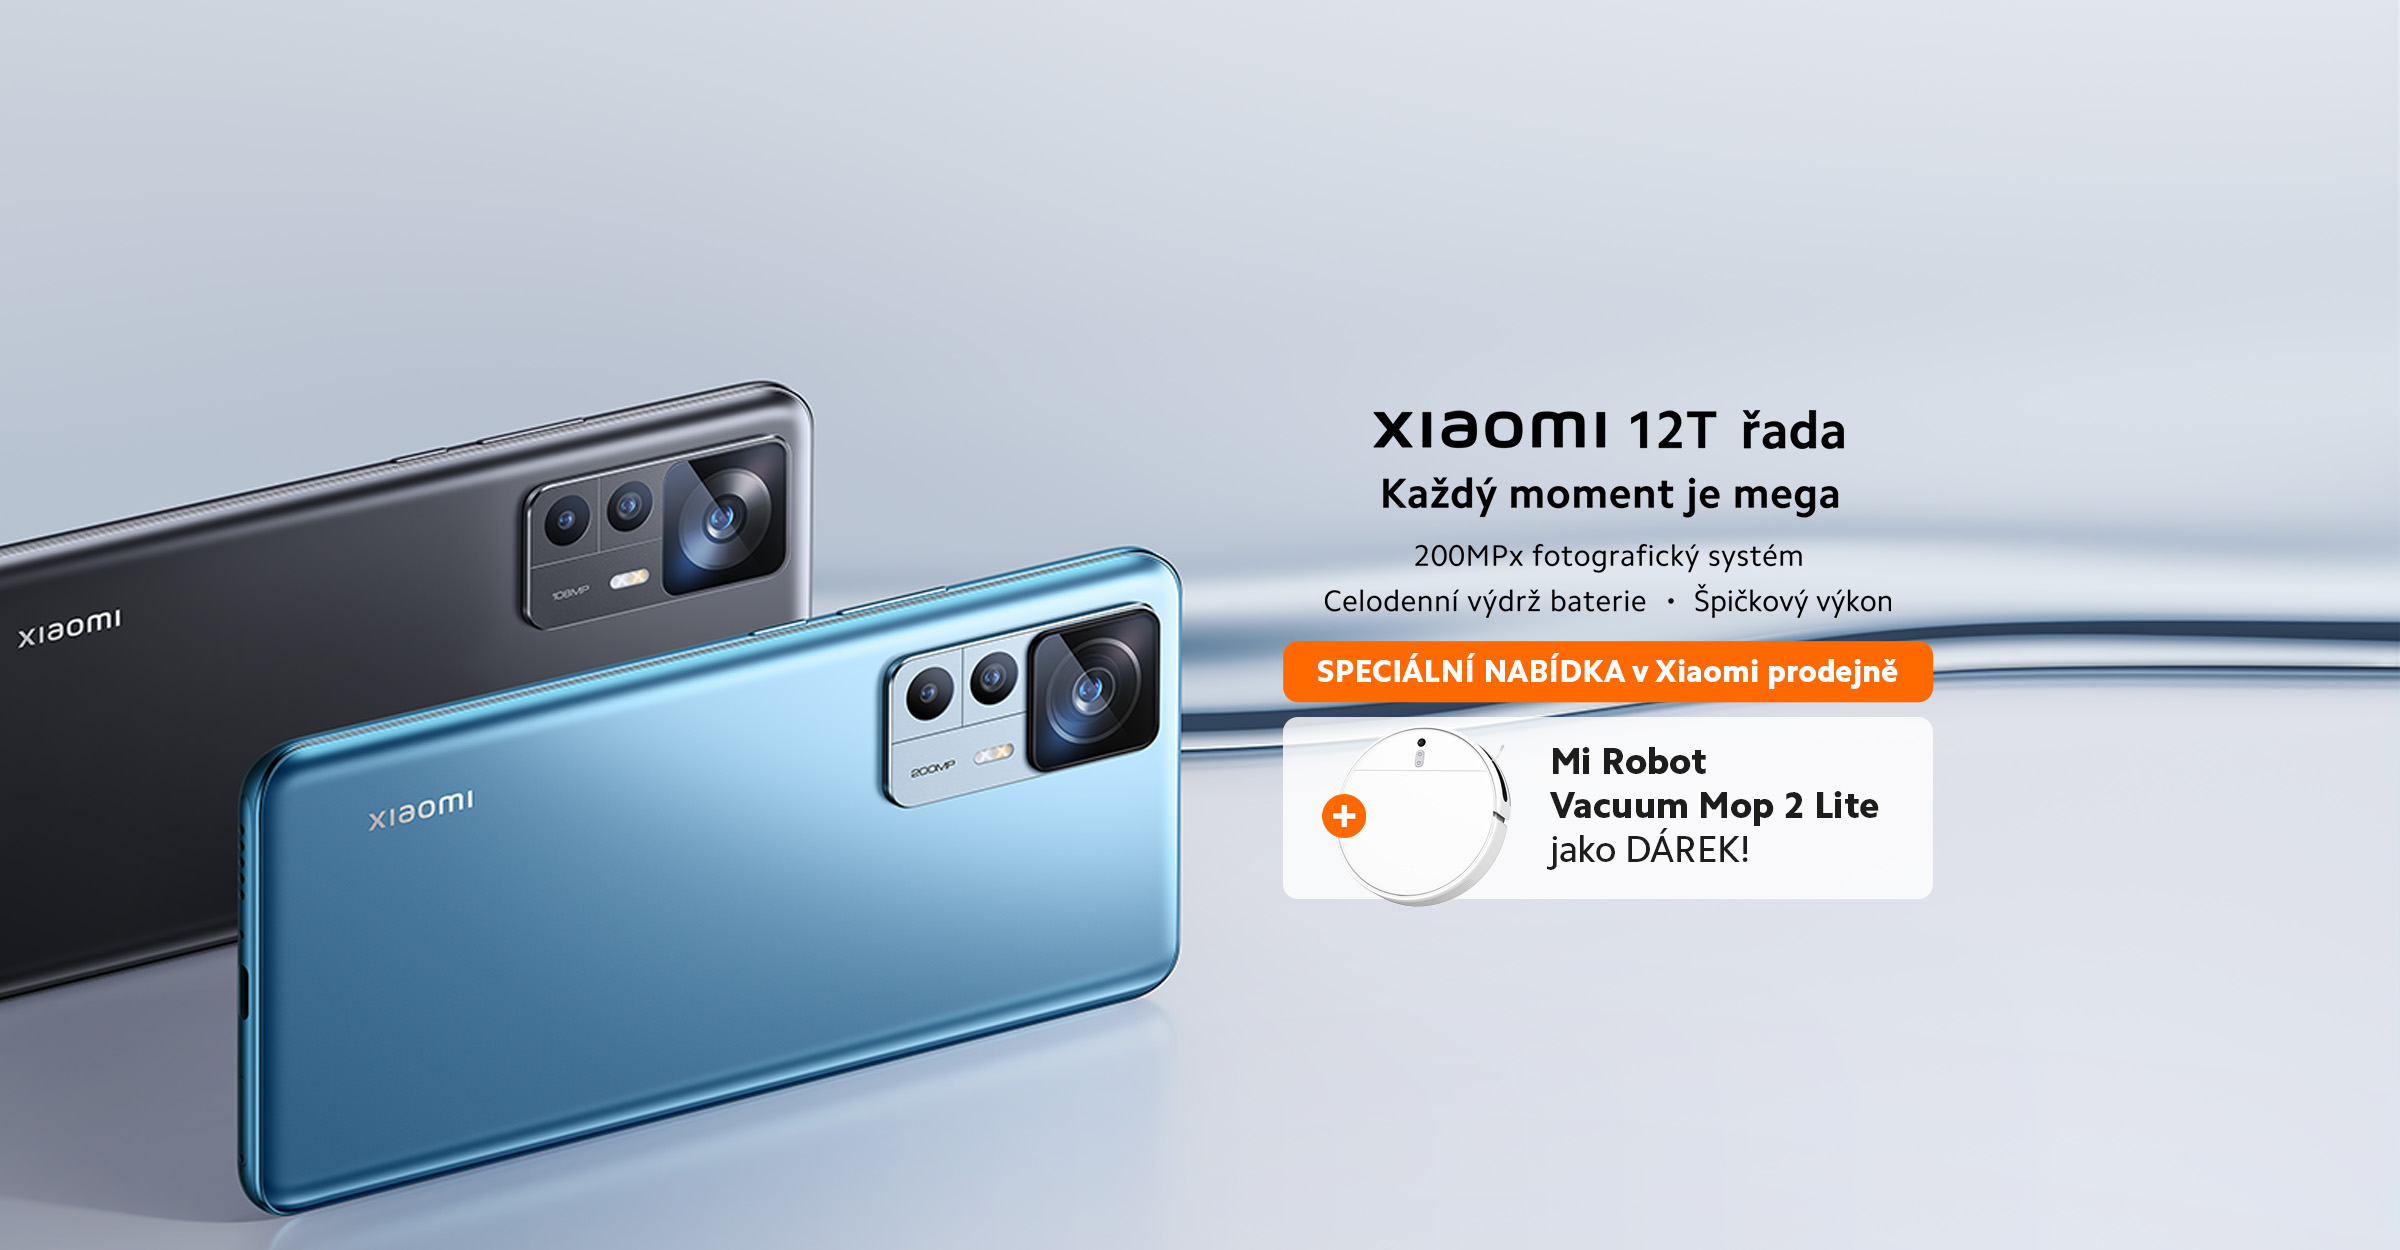 Přijďte si na prodejnu Xiaomi pro novinku Xiaomi 12T nebo 12T Pro s vysavačem jako dárek!